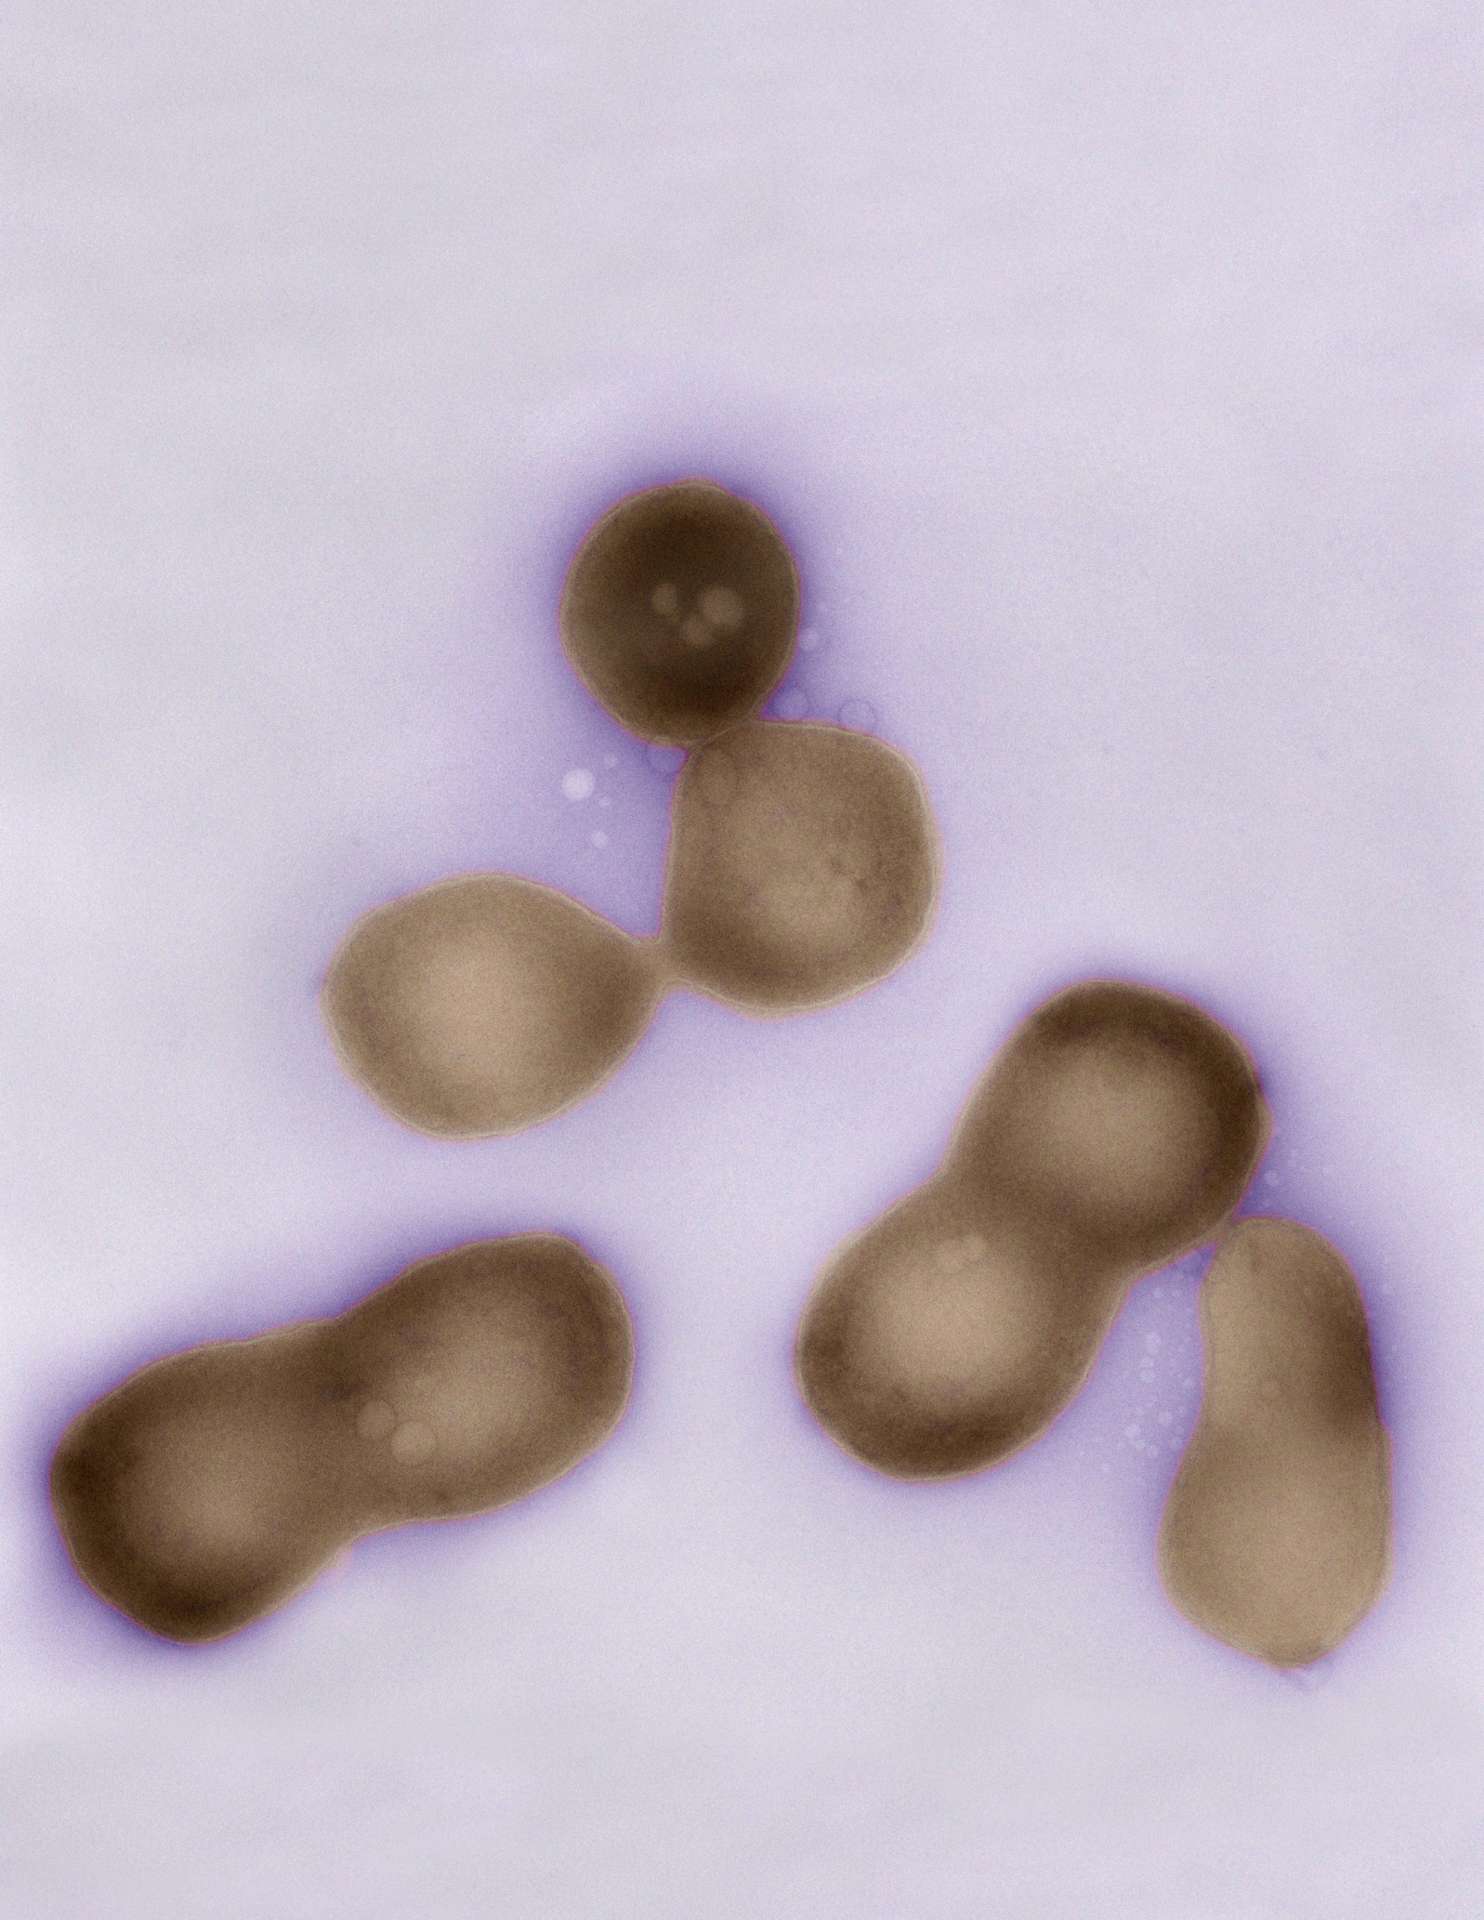 Des cellules de Mycoplasma mycoides vues au microscope électronique. Elles sont minuscules et leur génome ne contient que 1,08 million de paires de bases. Mais cet ADN est le plus grand édifice moléculaire fabriqué en laboratoire. © Tom Deerinck/Mark Ellisman/National Center for Microscopy and Imaging Research (University of California at San Diego)